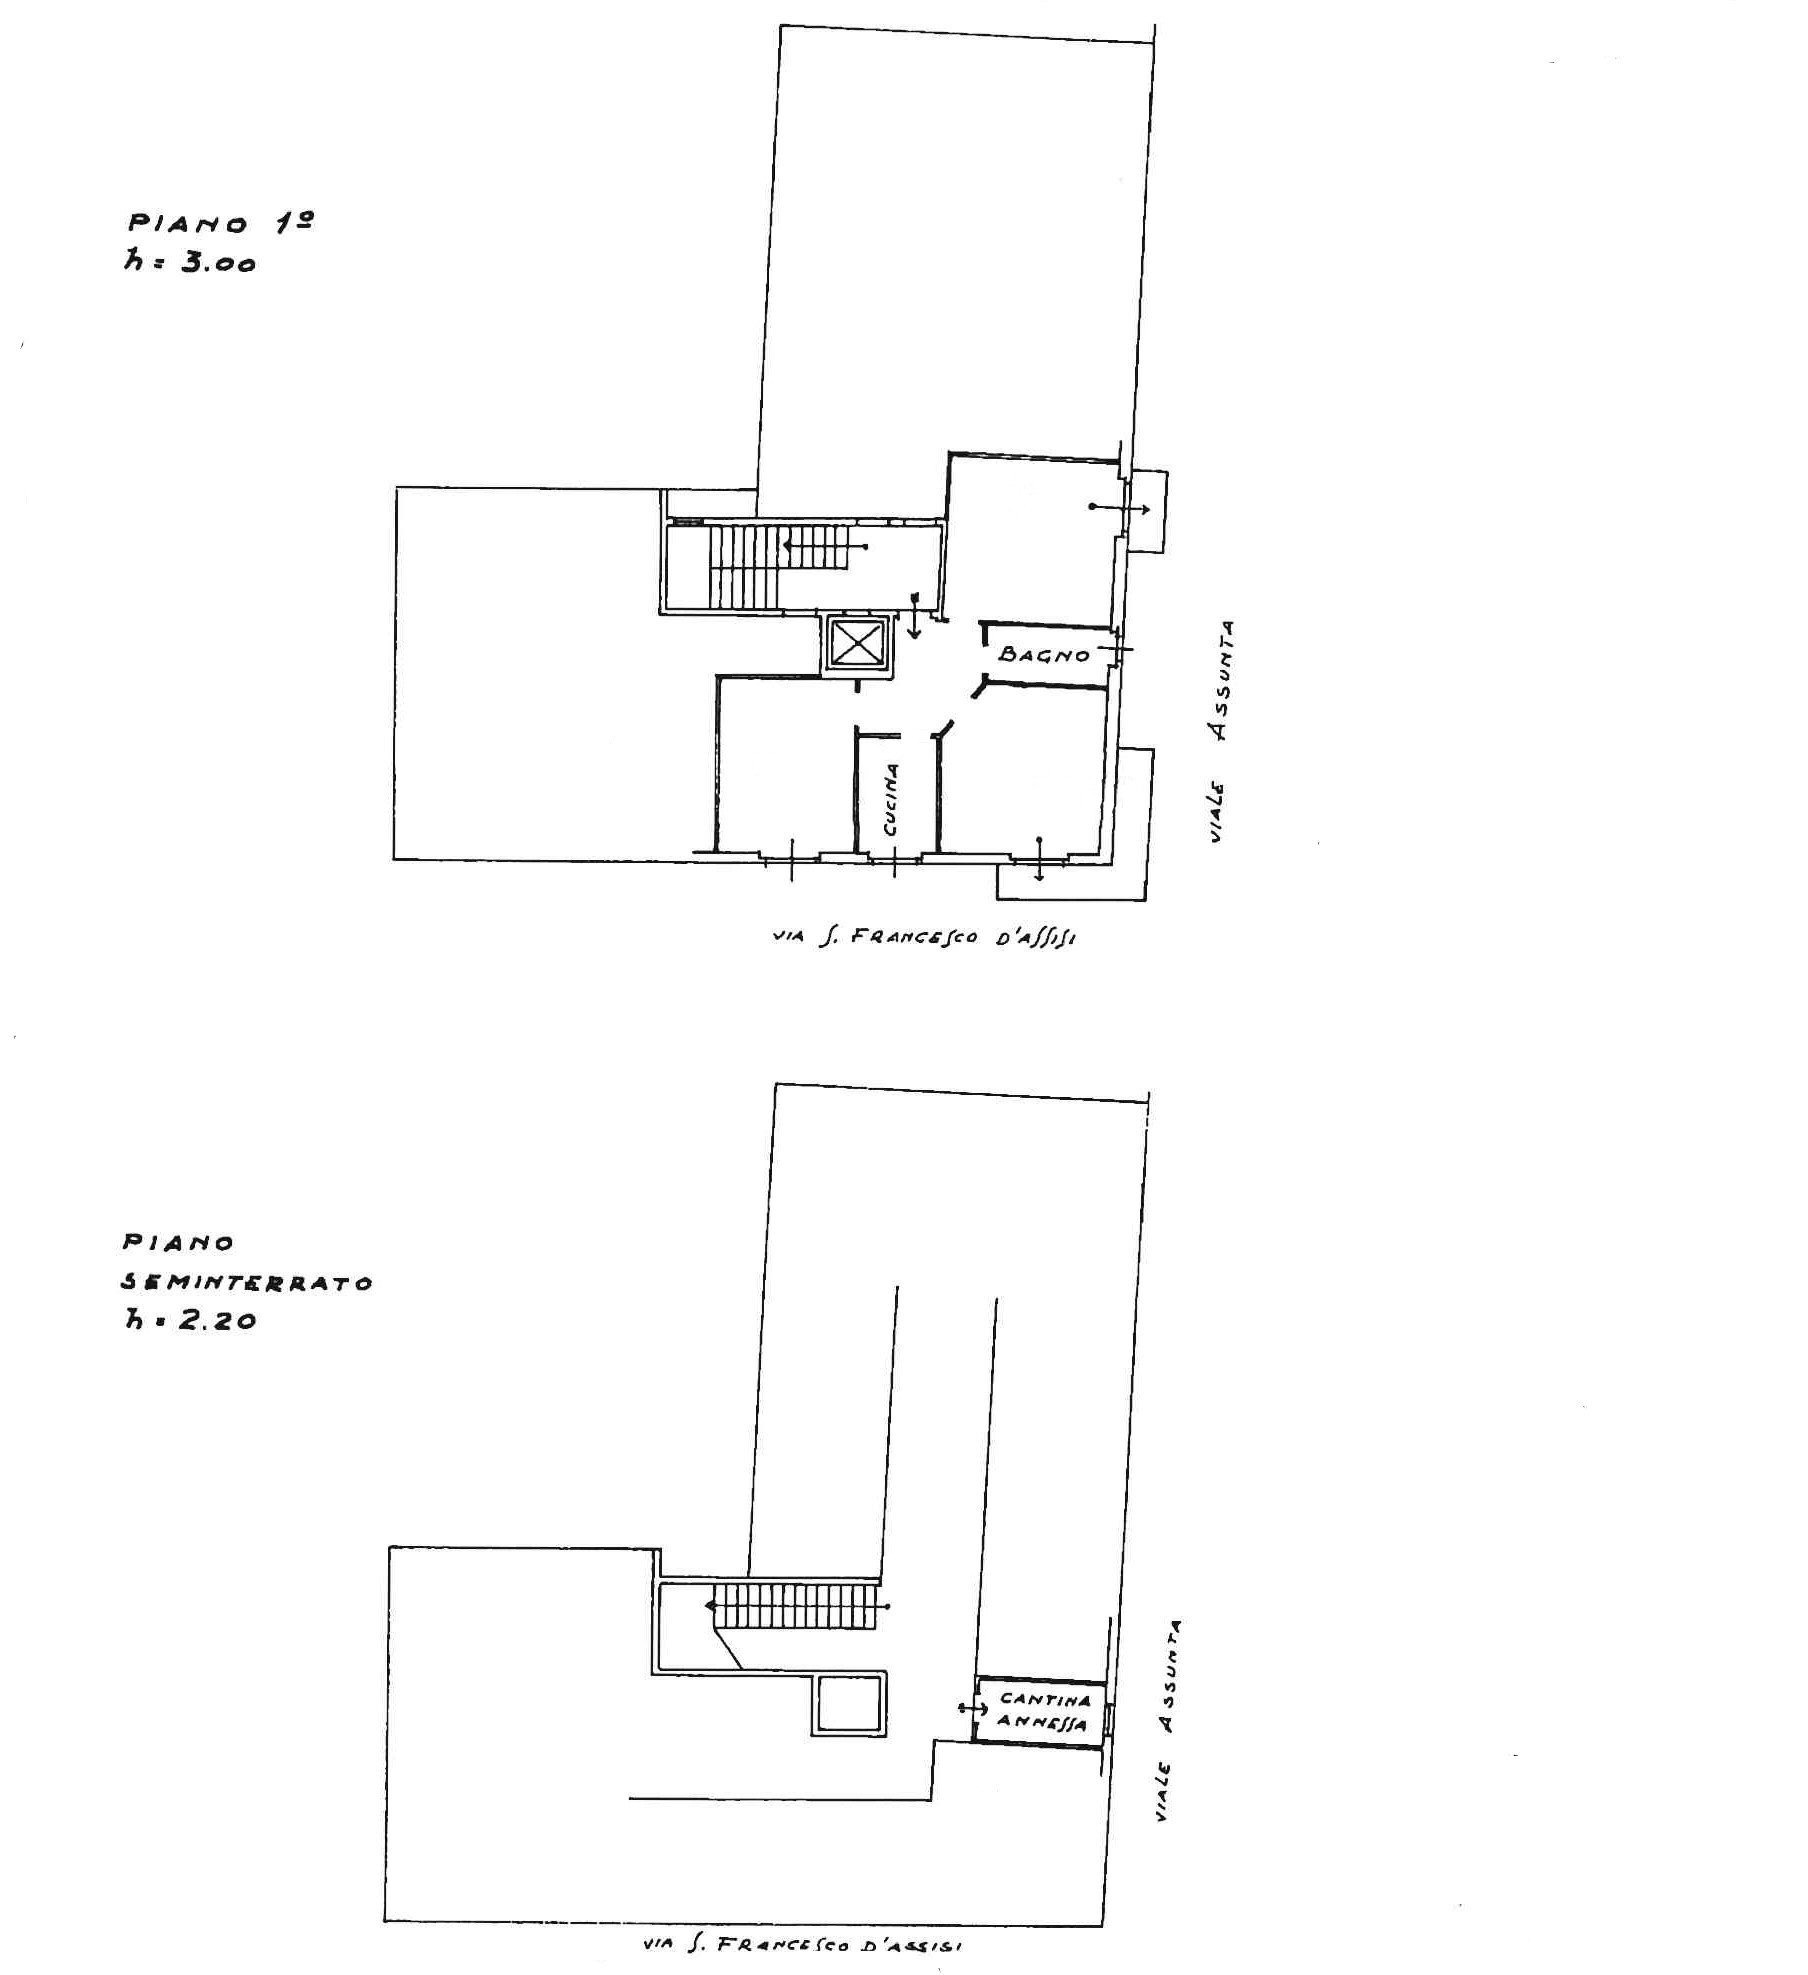 Vendita appartamento Cernusco sul Naviglio - immagine 24